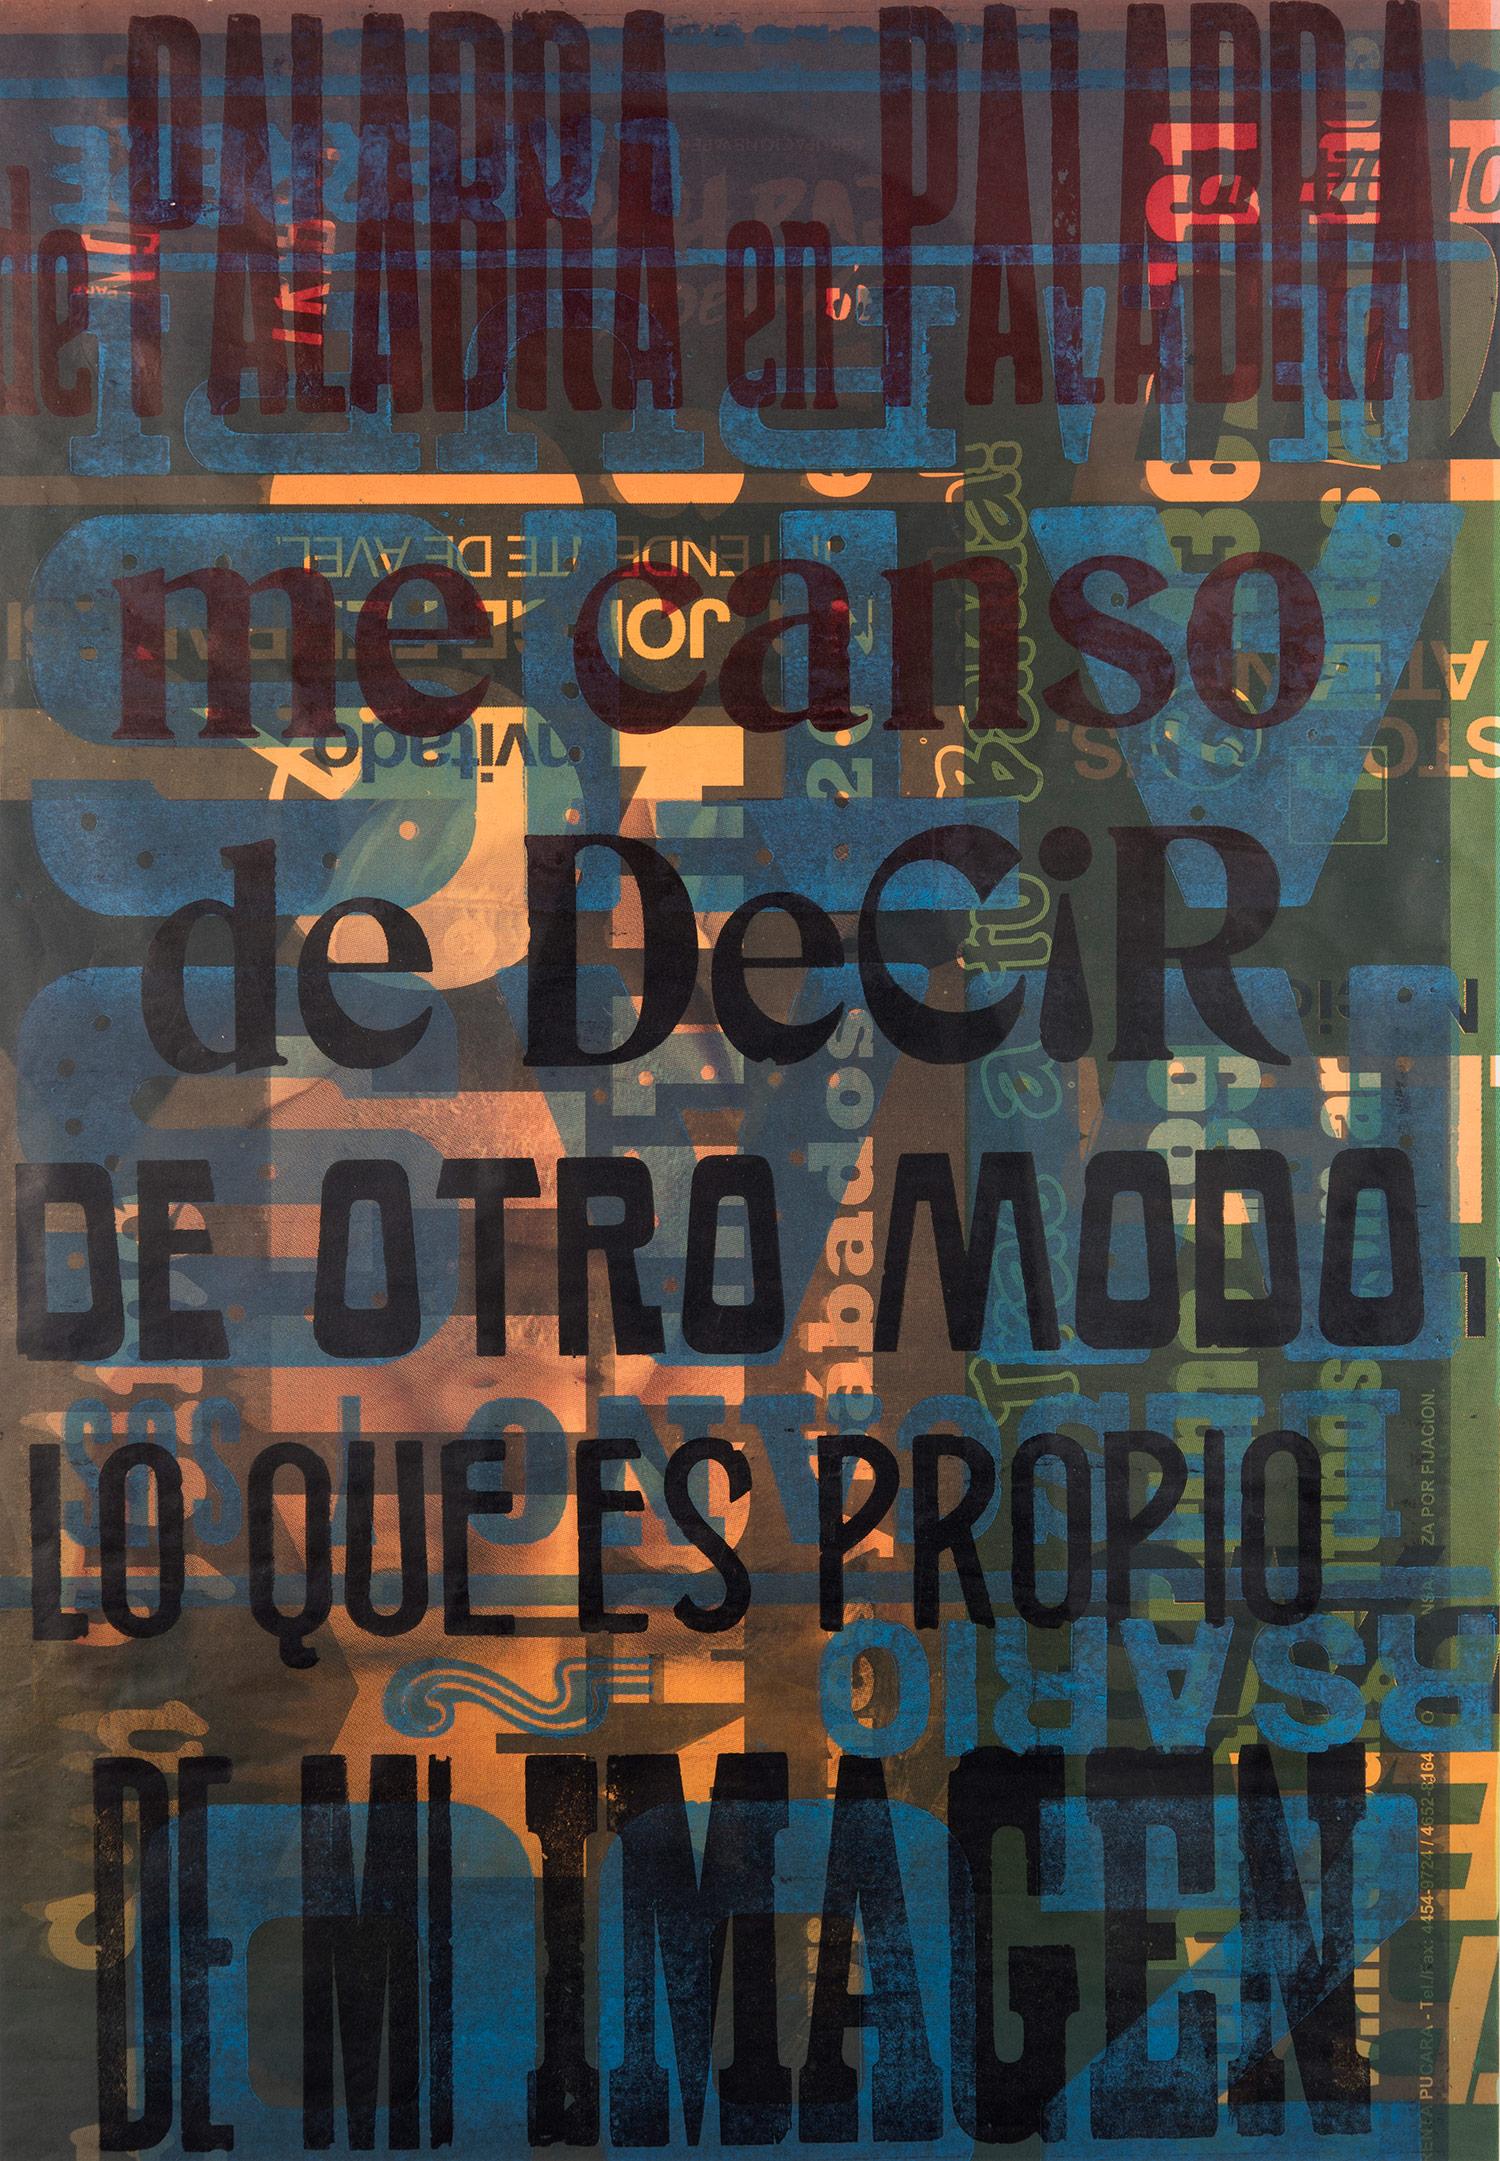 « De Palabra en Palabra », typographie traditionnelle en bois sur papier d'affiche de récupération - Painting de Ro Barragan